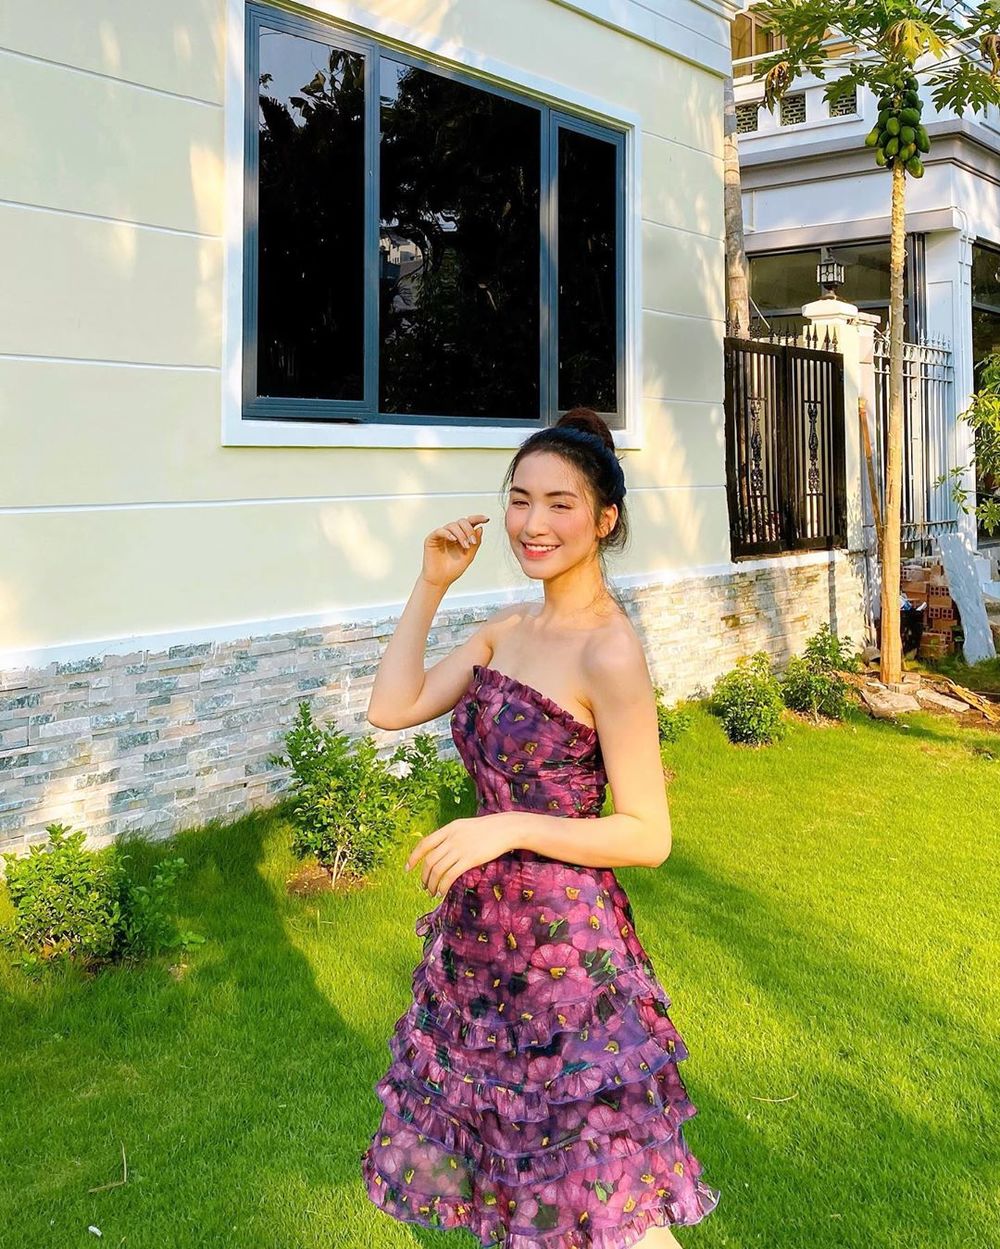  
Những ngày ở nhà chống dịch, Hòa Minzy vẫn chăm chỉ lên đồ đẹp, đặc biệt là kiểu váy ôm ngực. Ảnh: Instagram